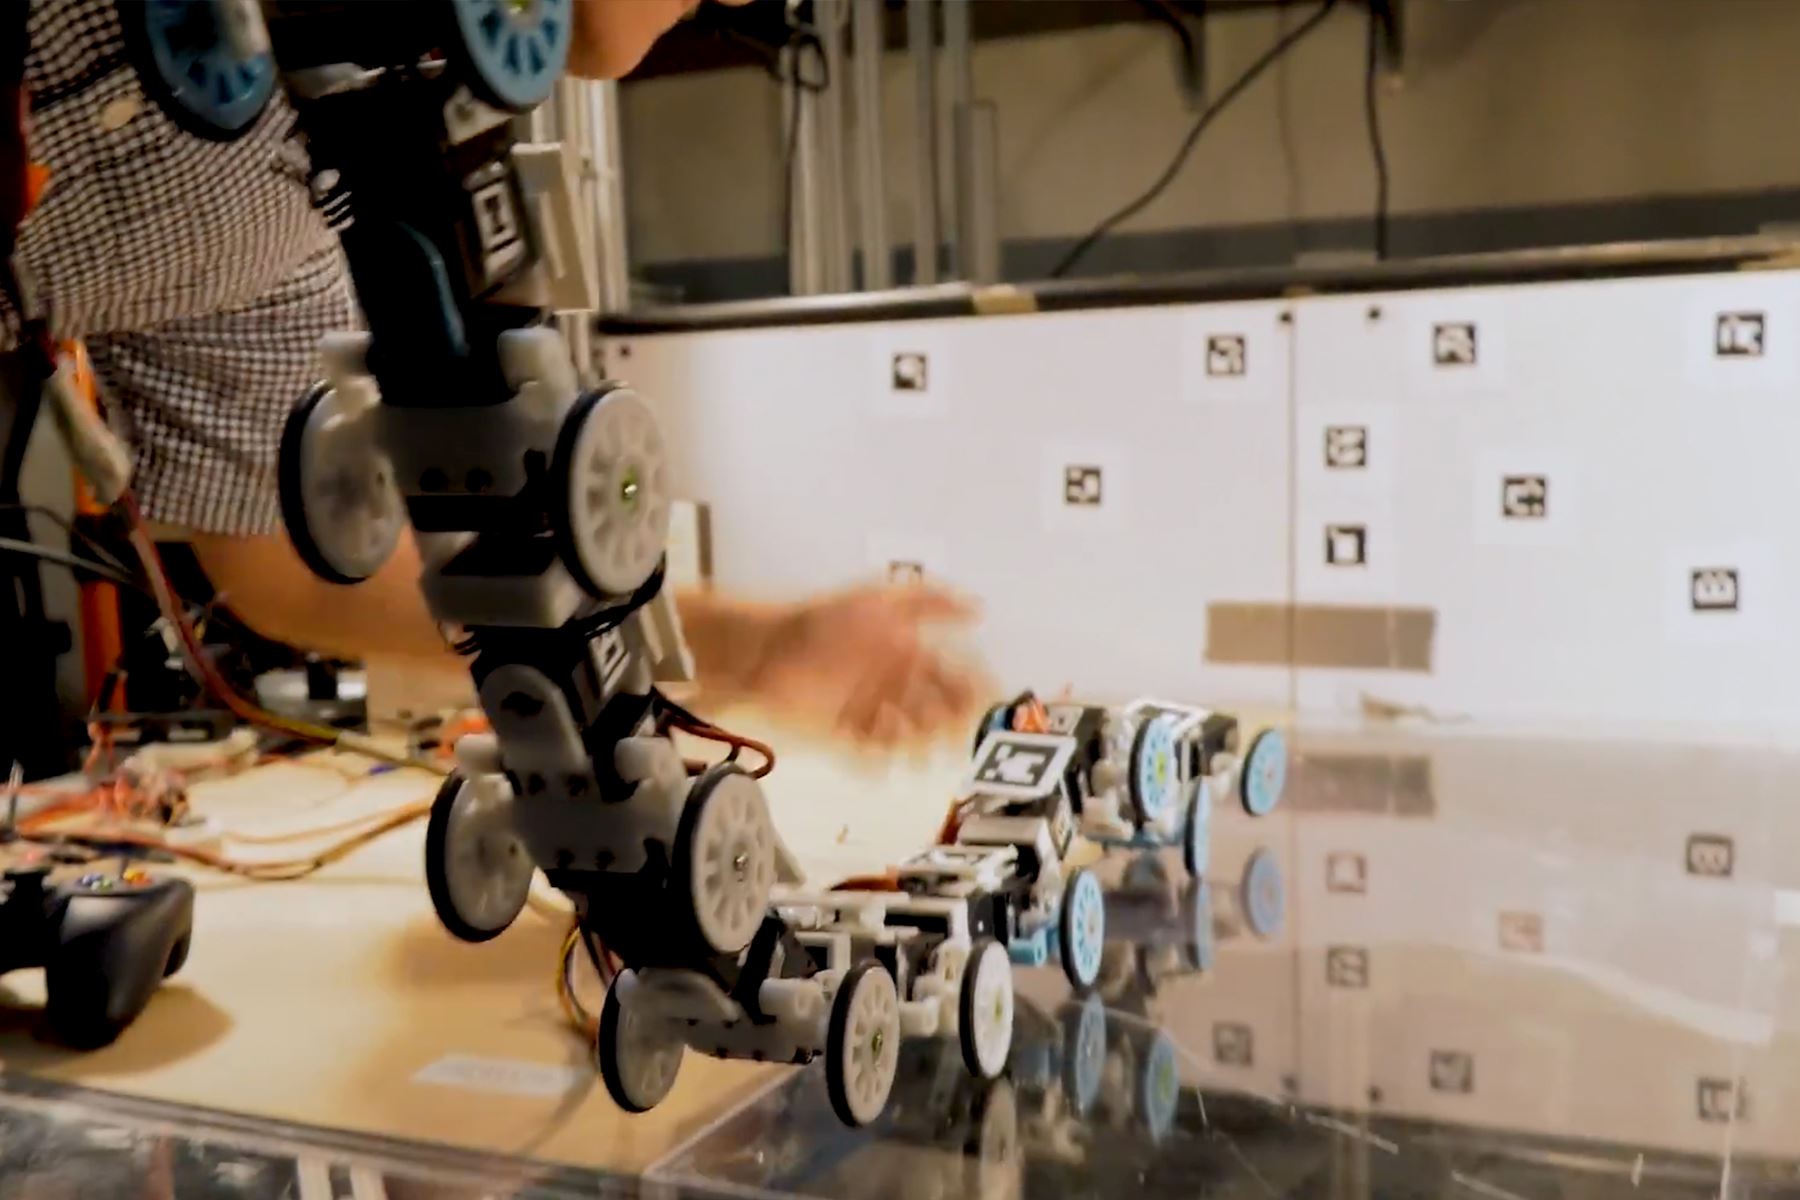 Al estudiar los movimientos de escalada de la serpiente rey, un equipo de ingenieros mecánicos construyó un robot serpiente que podría ayudar a avanzar en la tecnología de búsqueda y rescate.